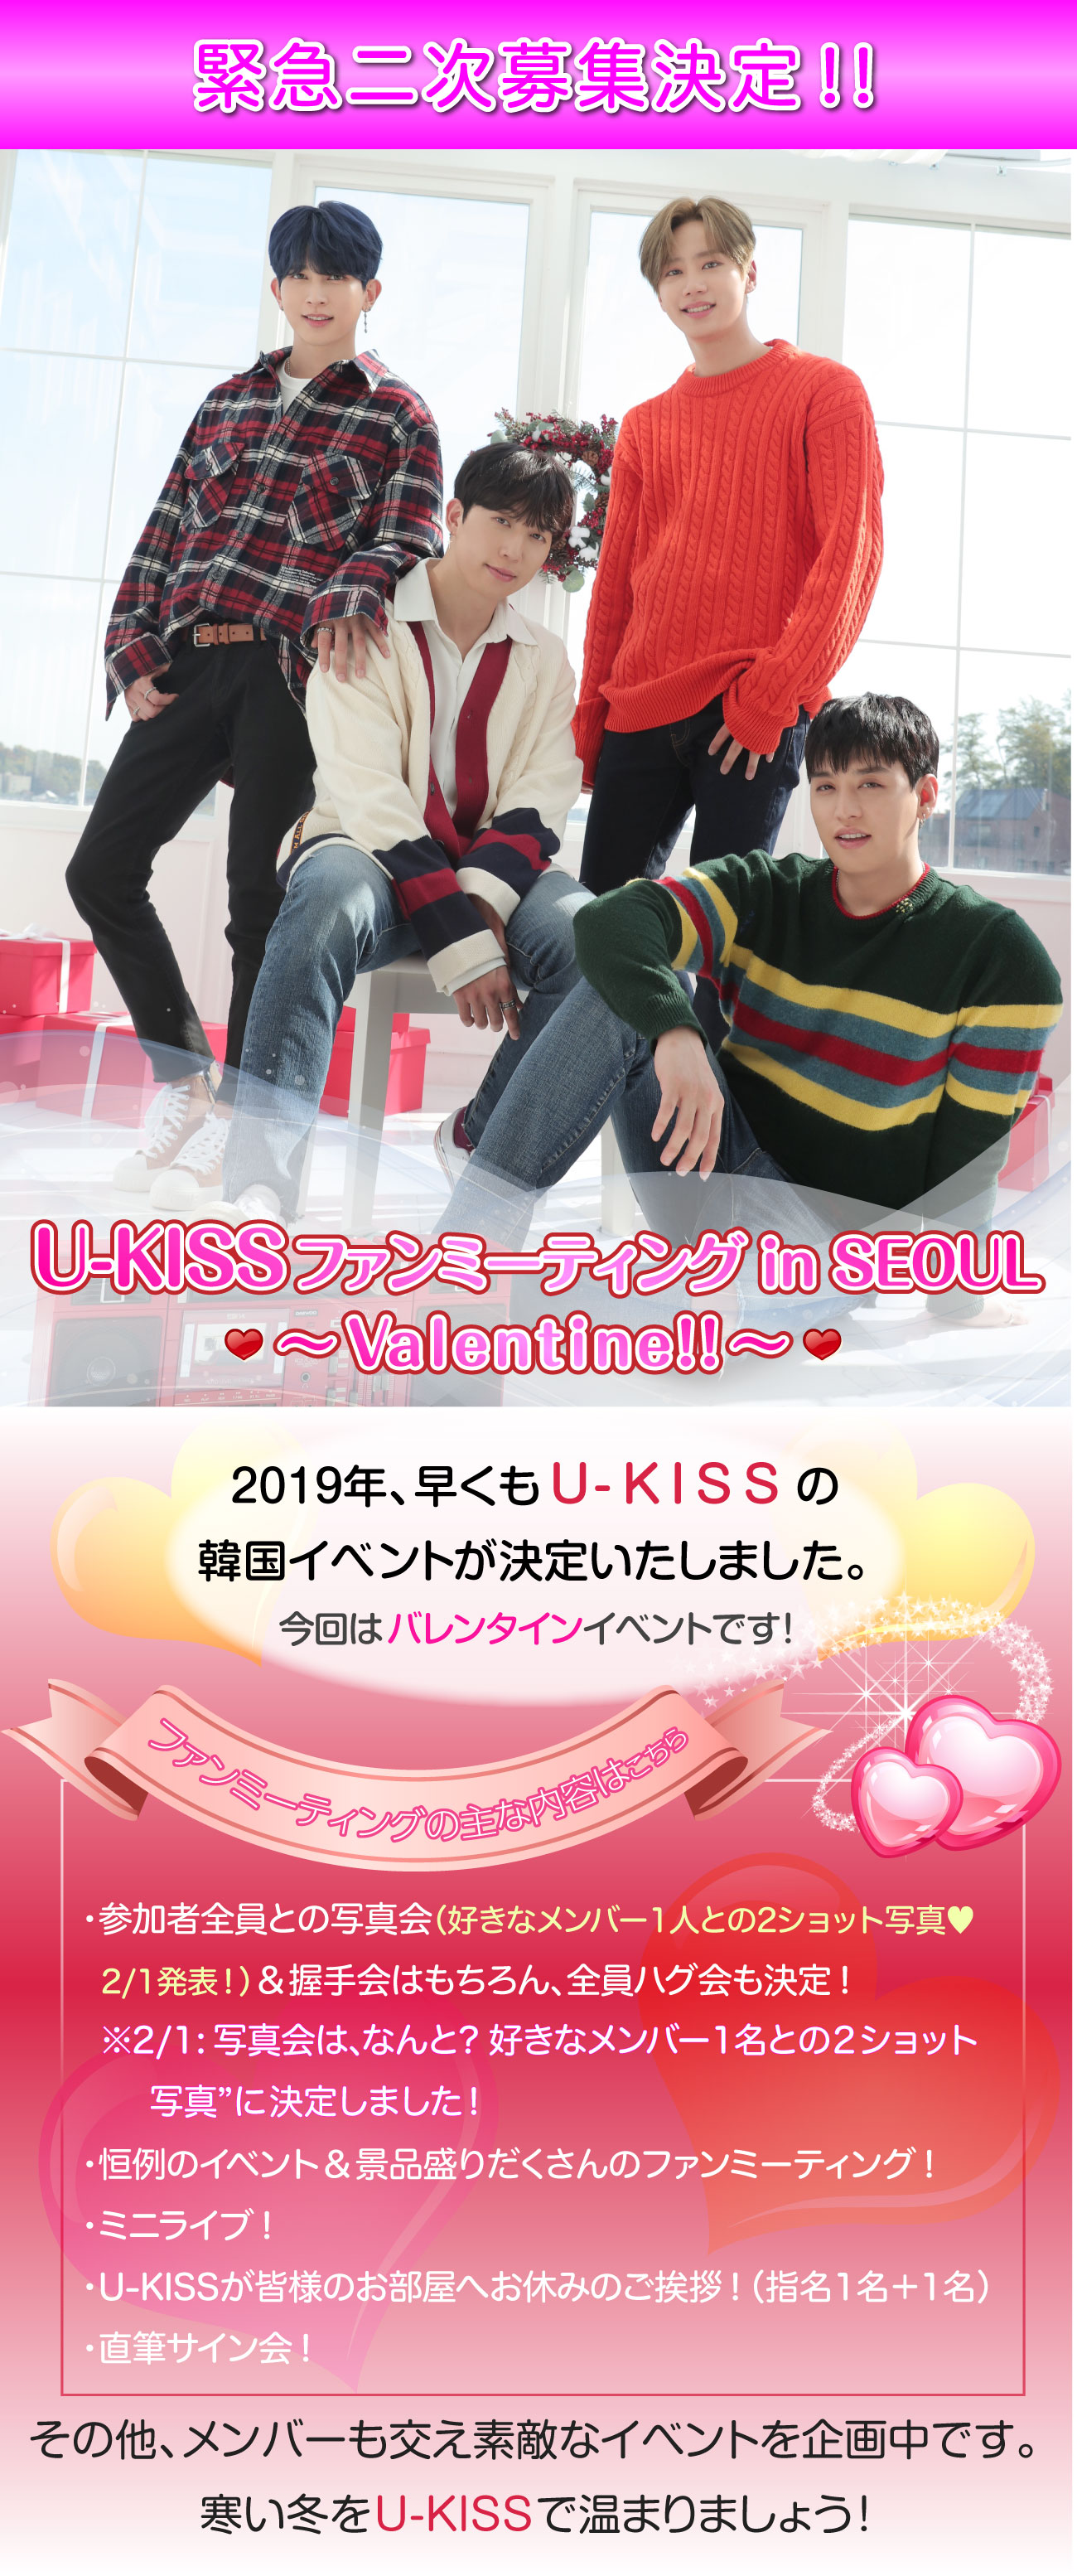 U-KISS ファンミーティング2019 in SEOUL ～ Valentain!! ～ 2019年、早くもU-KISSの韓国イベントが決定いたしました。今回はバレンタインイベントです！ファンミーティングの主な内容・参加者全員との写真会＆握手会はもちろん、全員ハグ会も決定！・恒例のイベント＆景品盛りだくさんのファンミーティング！・ミニライブ！・U-KISS全員が皆様のお部屋へお休みのご挨拶！・直筆サイン会！その他、メンバーも交え素敵なイベントを企画中です。寒い冬をU-KISSで温まりましょう！